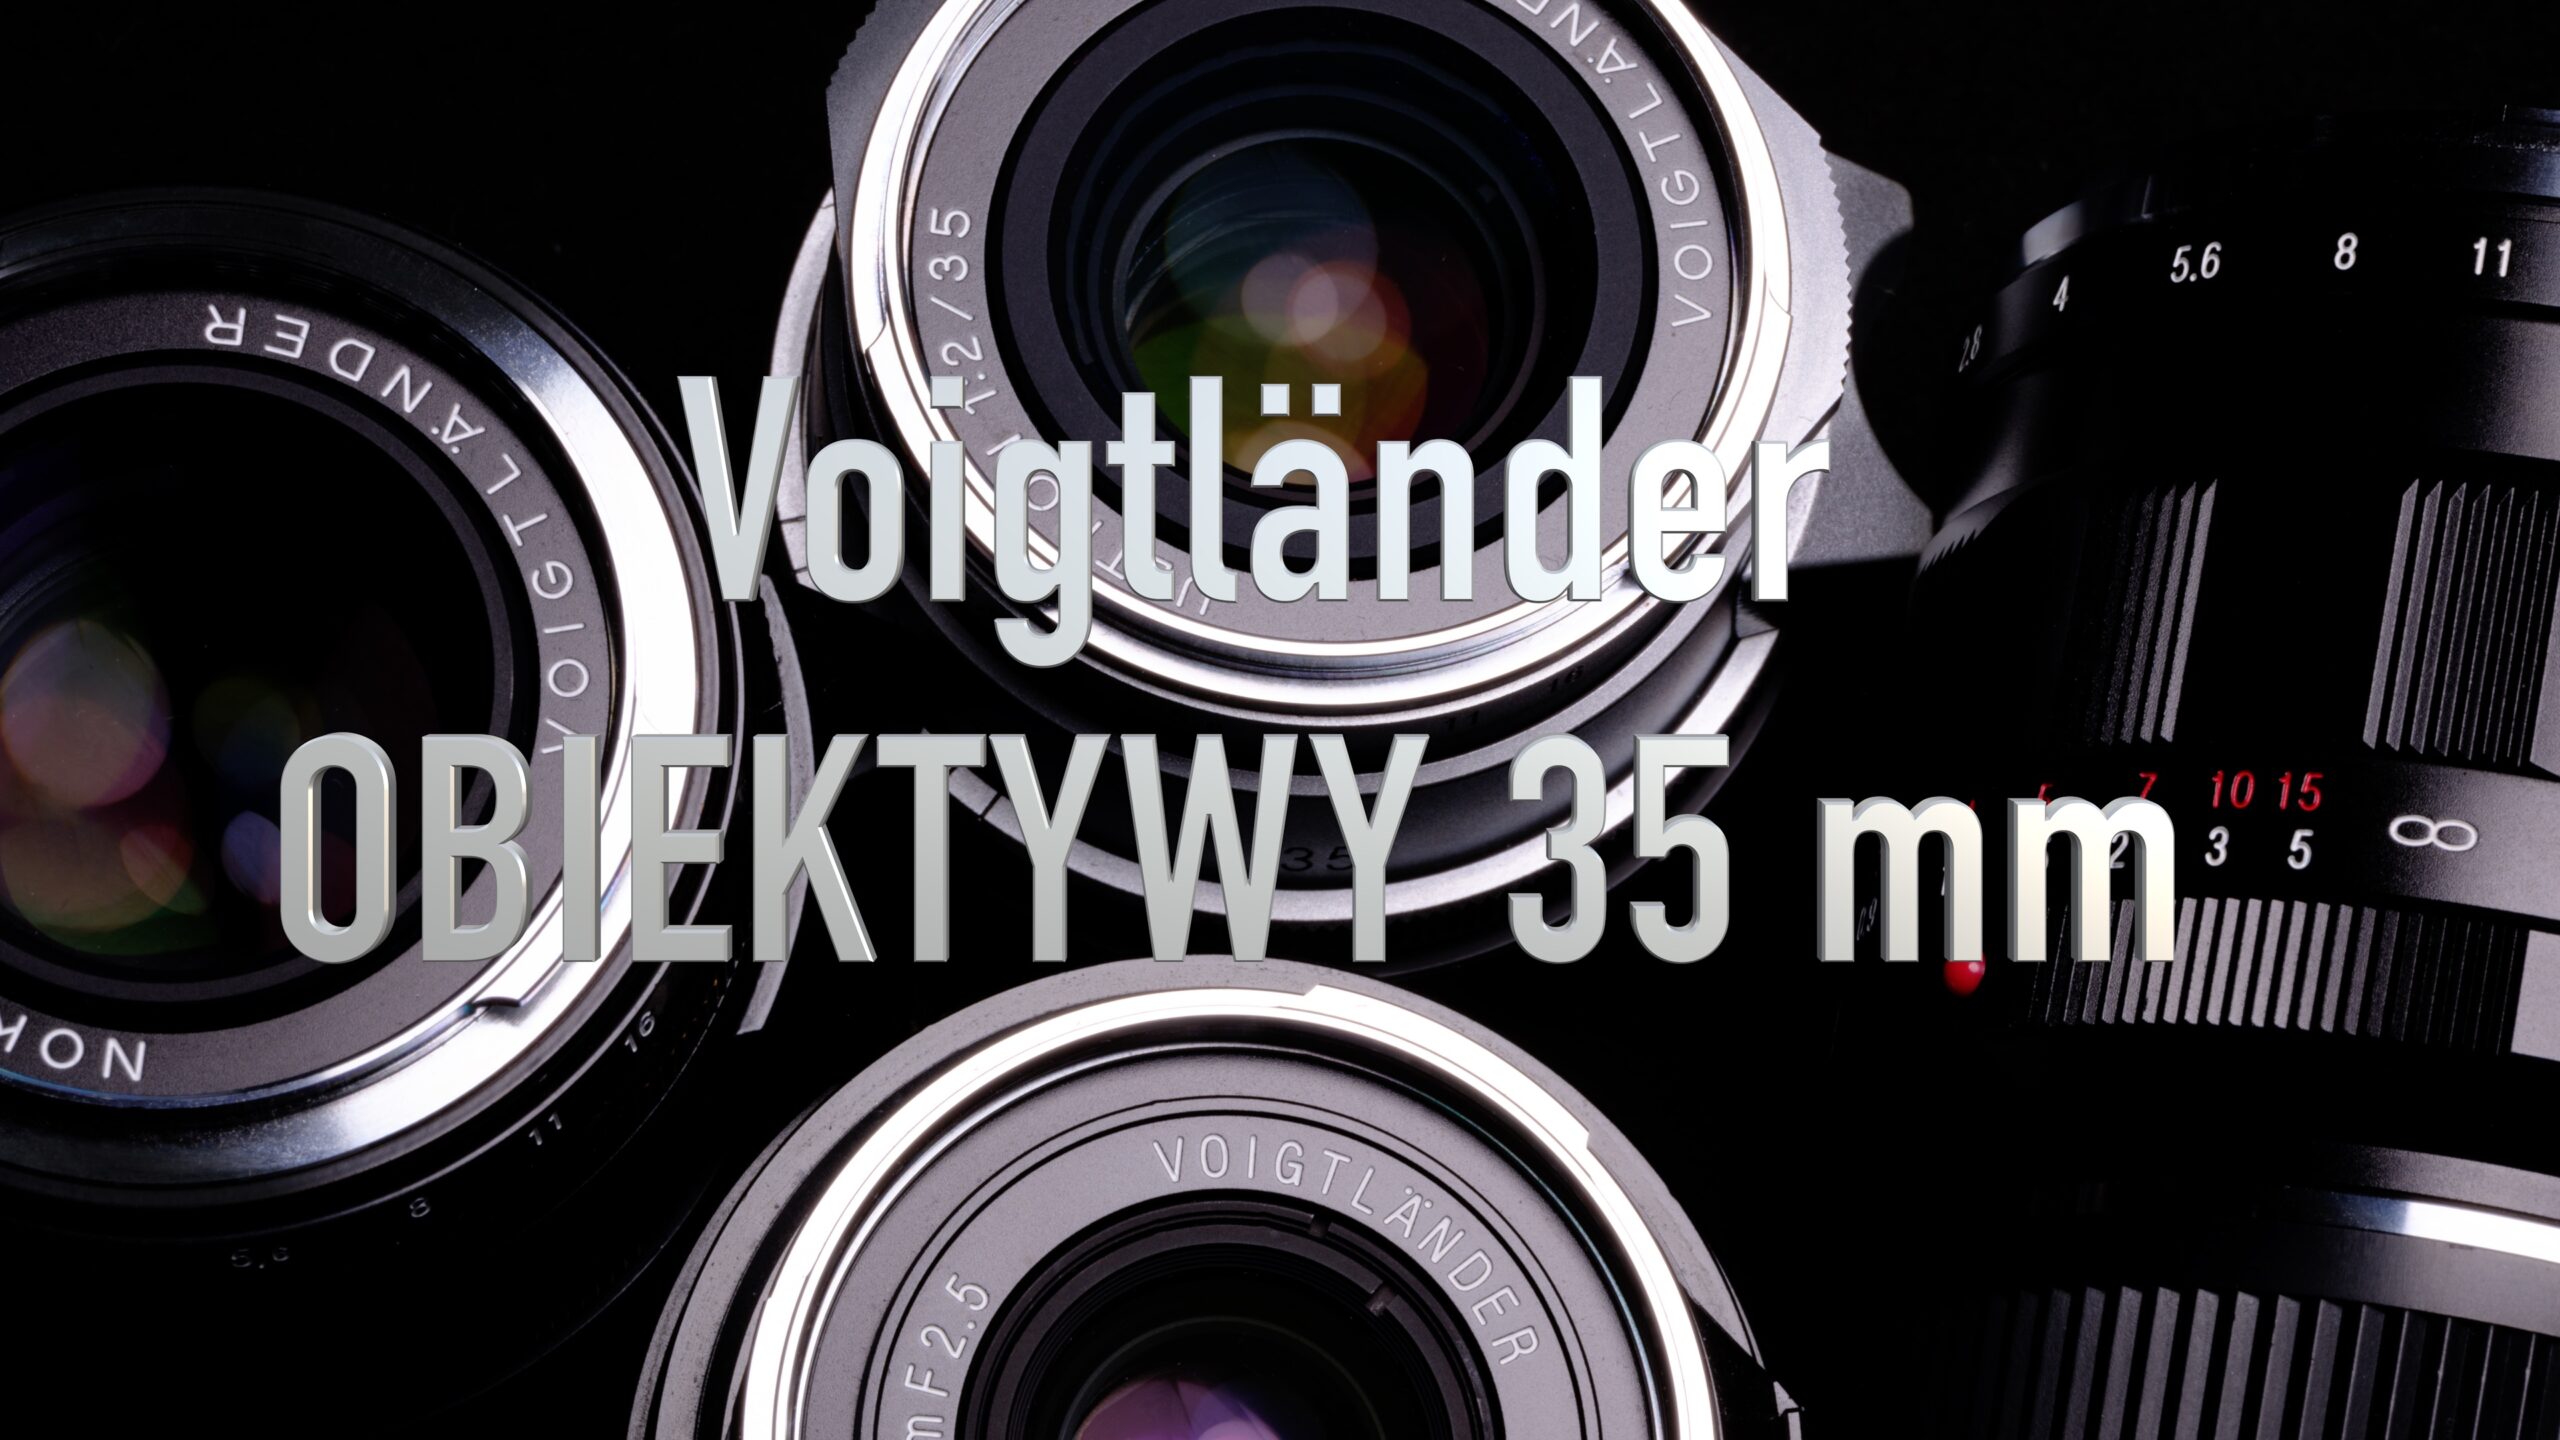 Obiektywy 35 mm wg. Voigtlander